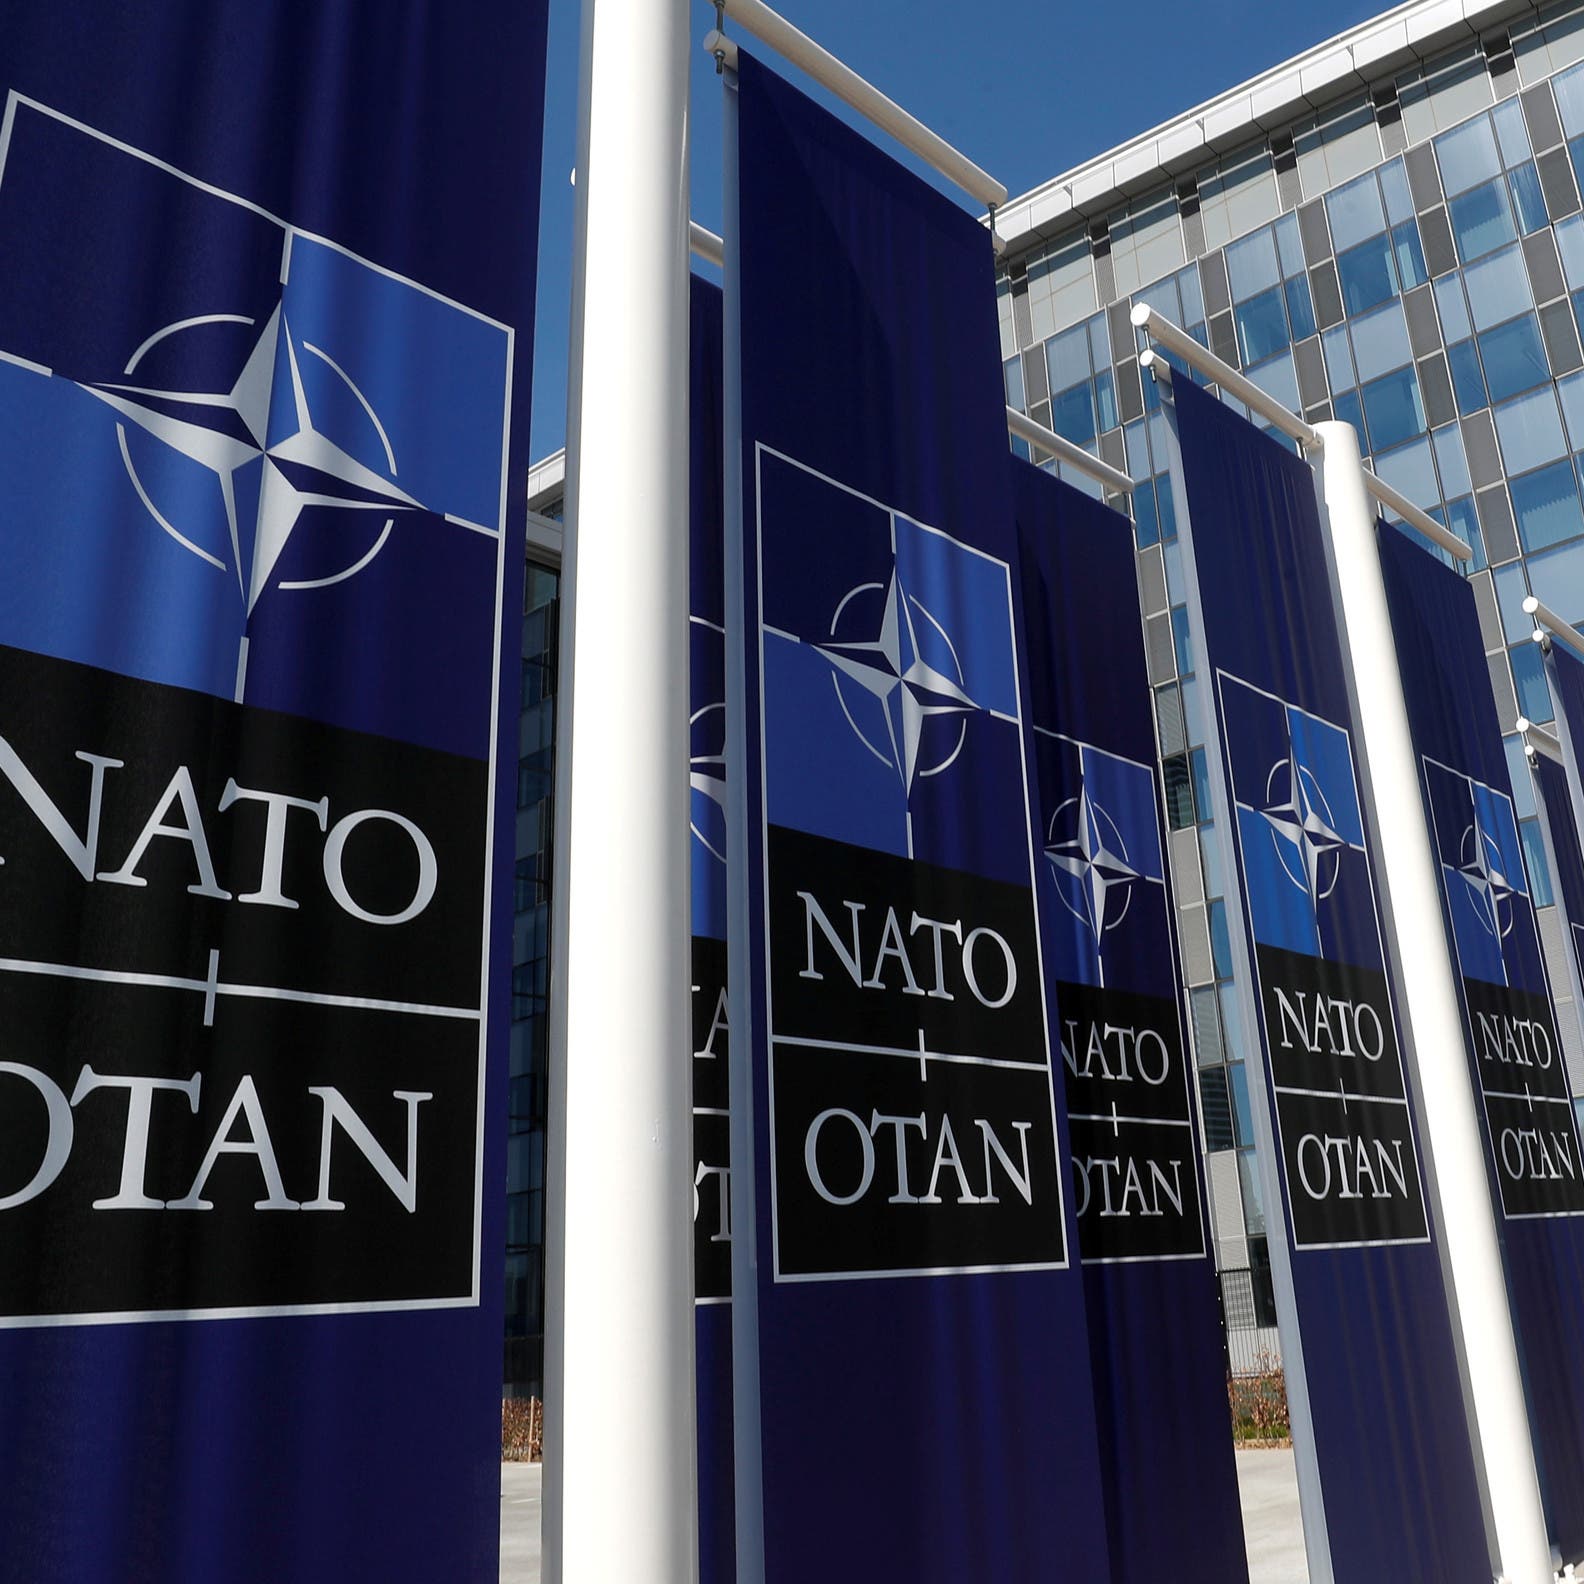 روسيا: طرد الناتو لدبلوماسيين روس يقوض آمال الحوار